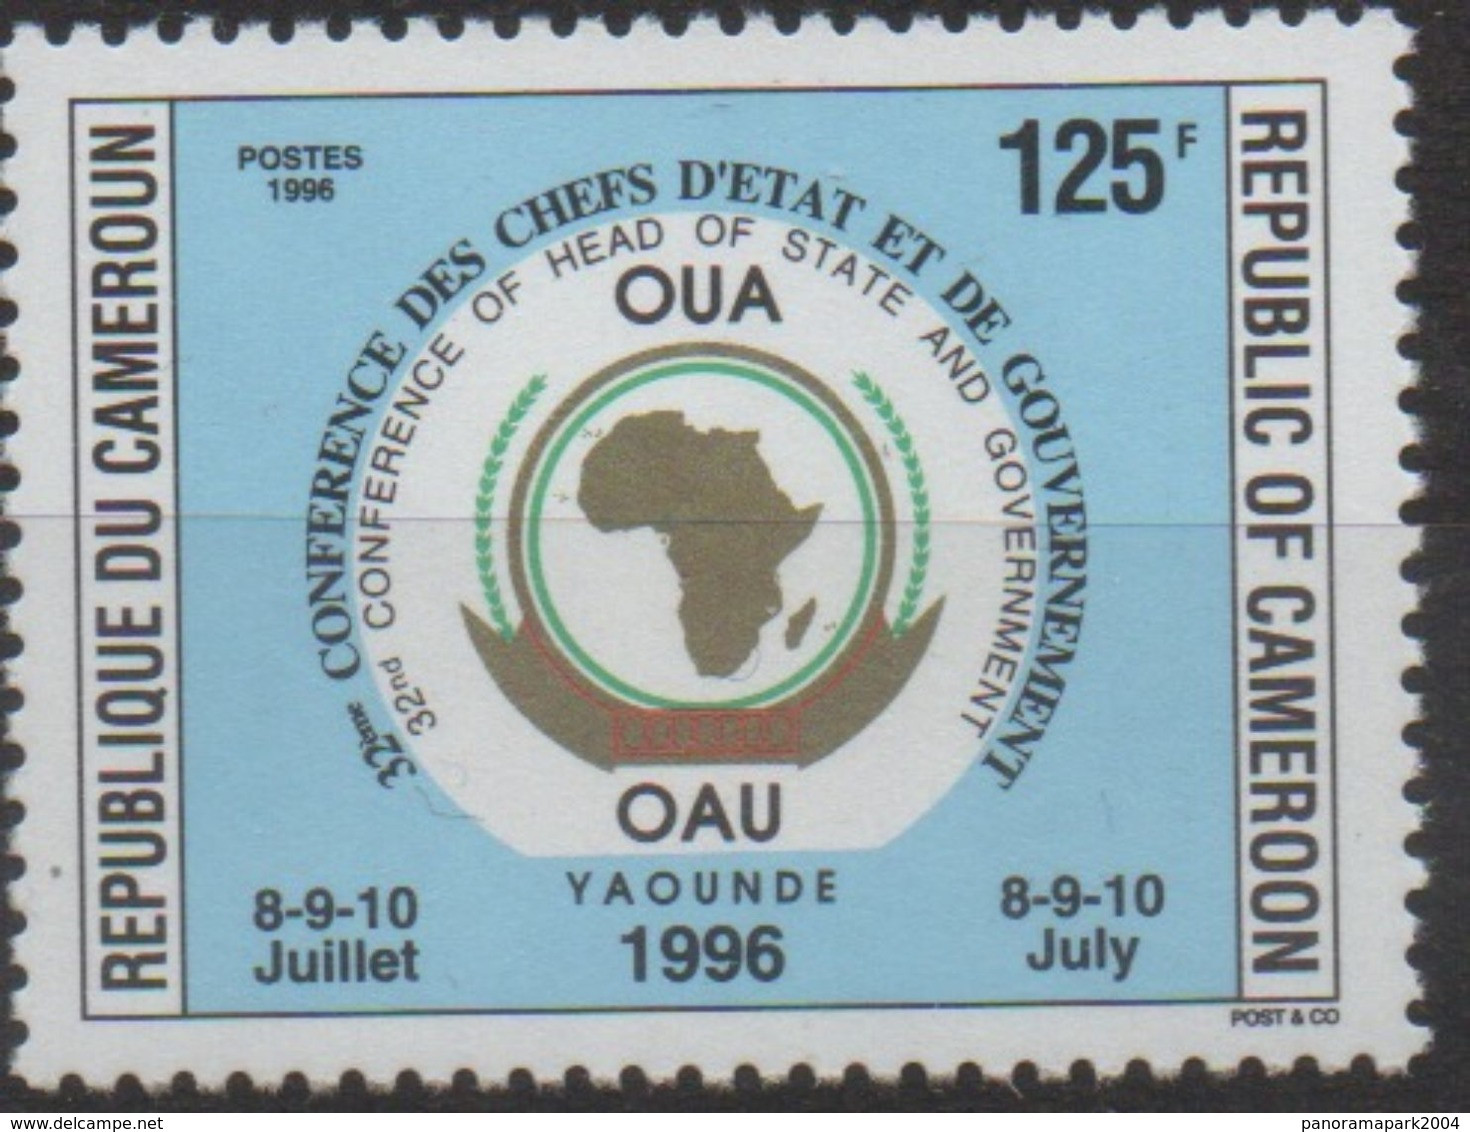 Cameroun Cameroon Kamerun 1996 125F Mi. 1221 OAU OUA Map Landkarte Carte Conférence Chefs D'Etat 8-9-10 Juillet - Cameroon (1960-...)